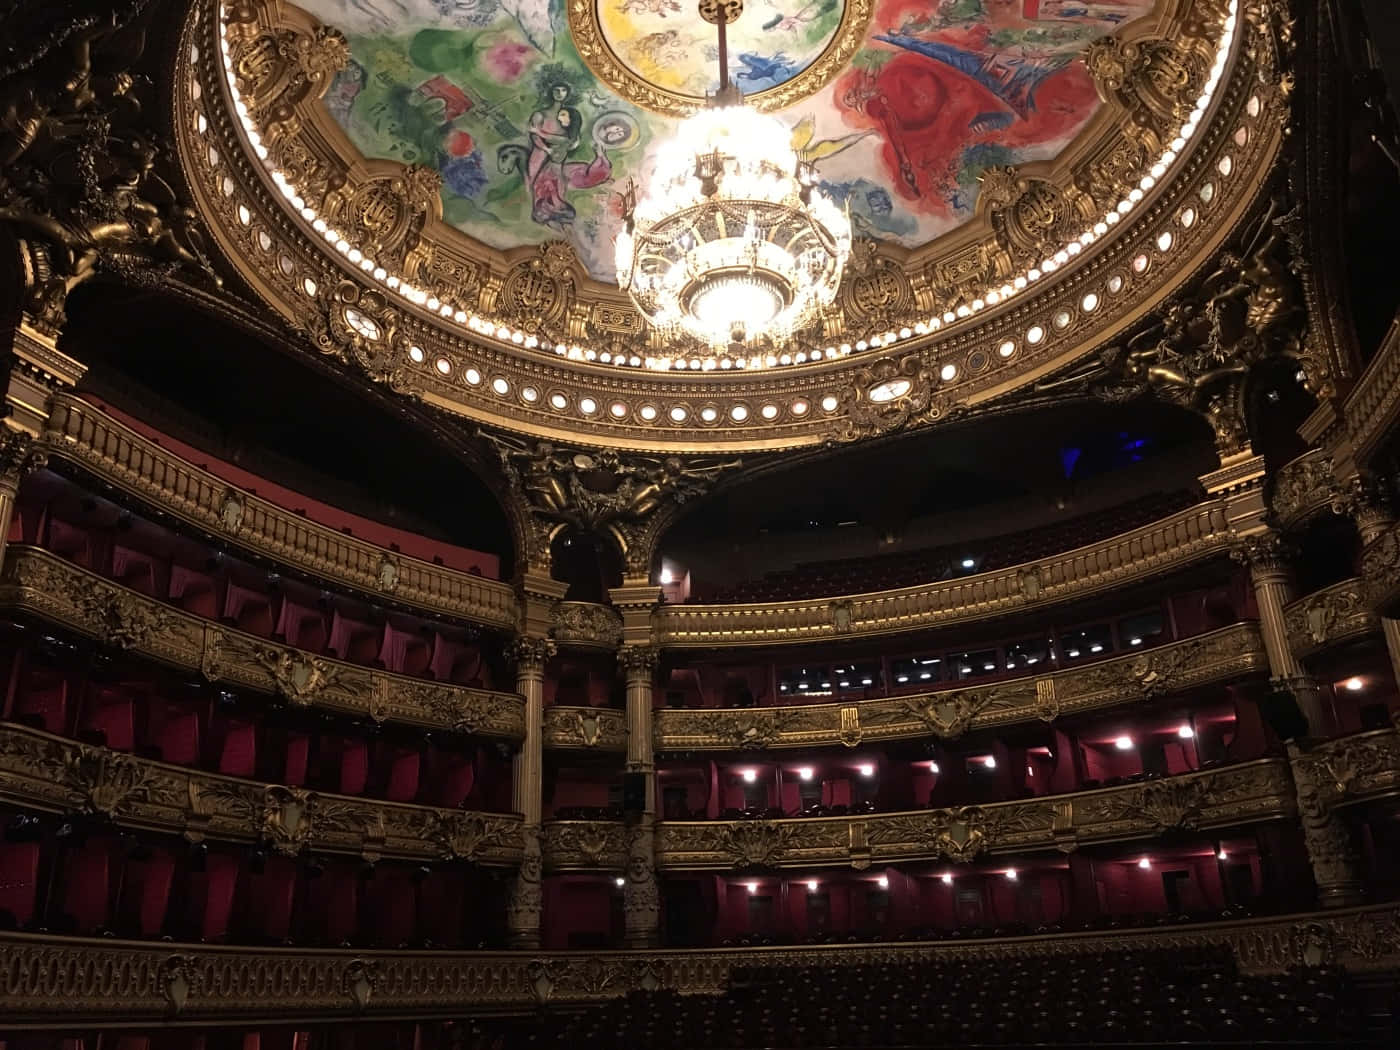 Mesmerizing Chandelier in Paris Opera House Wallpaper